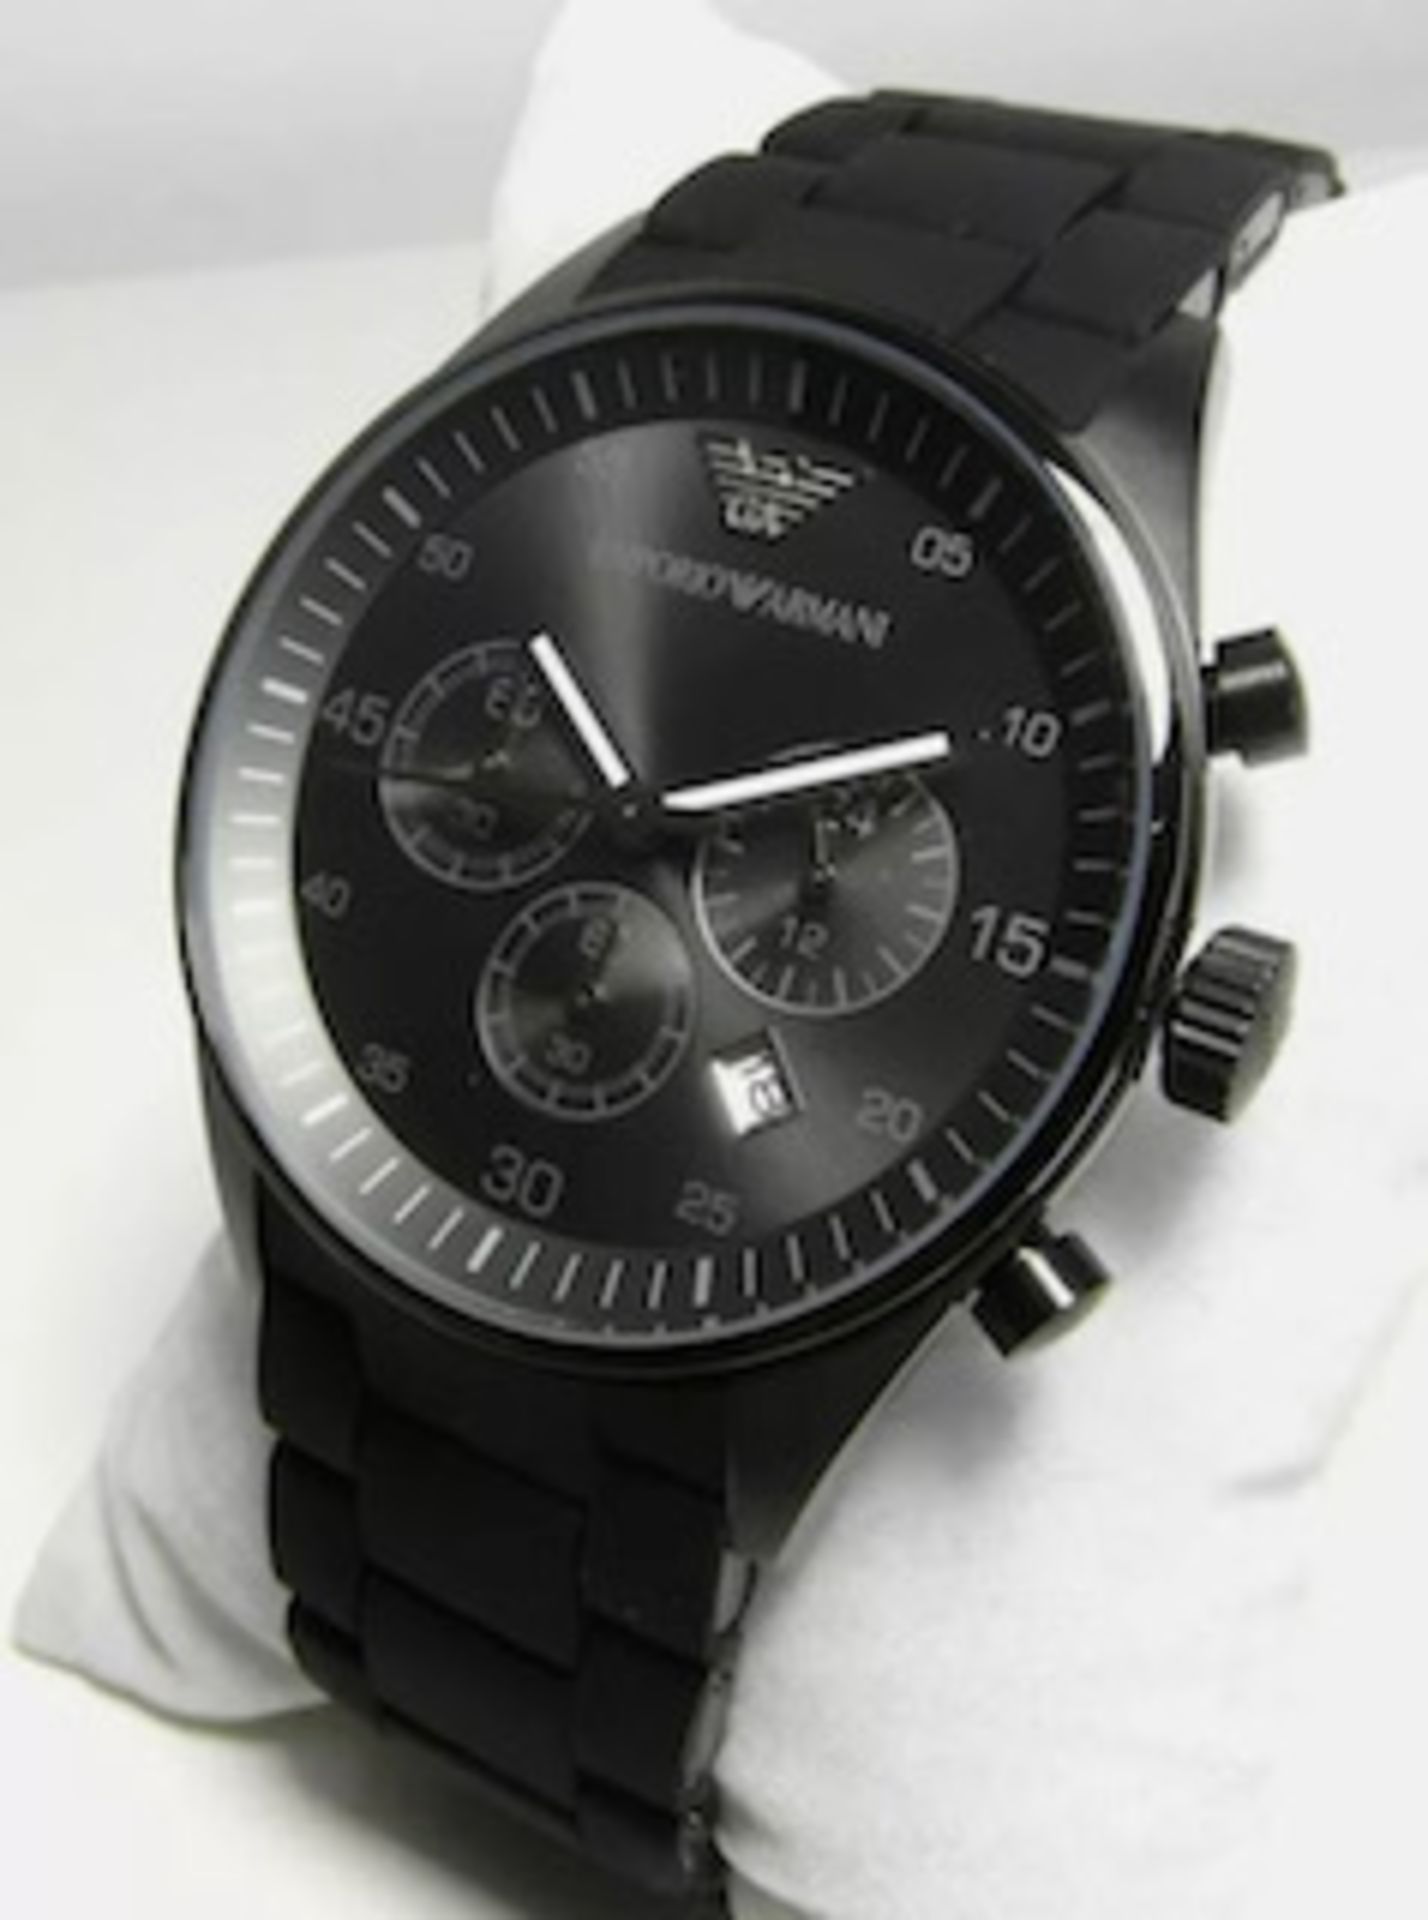 Emporio Armani AR5889 Men's Sportivo Black Dial Quartz Chronograph Watch - Image 3 of 5